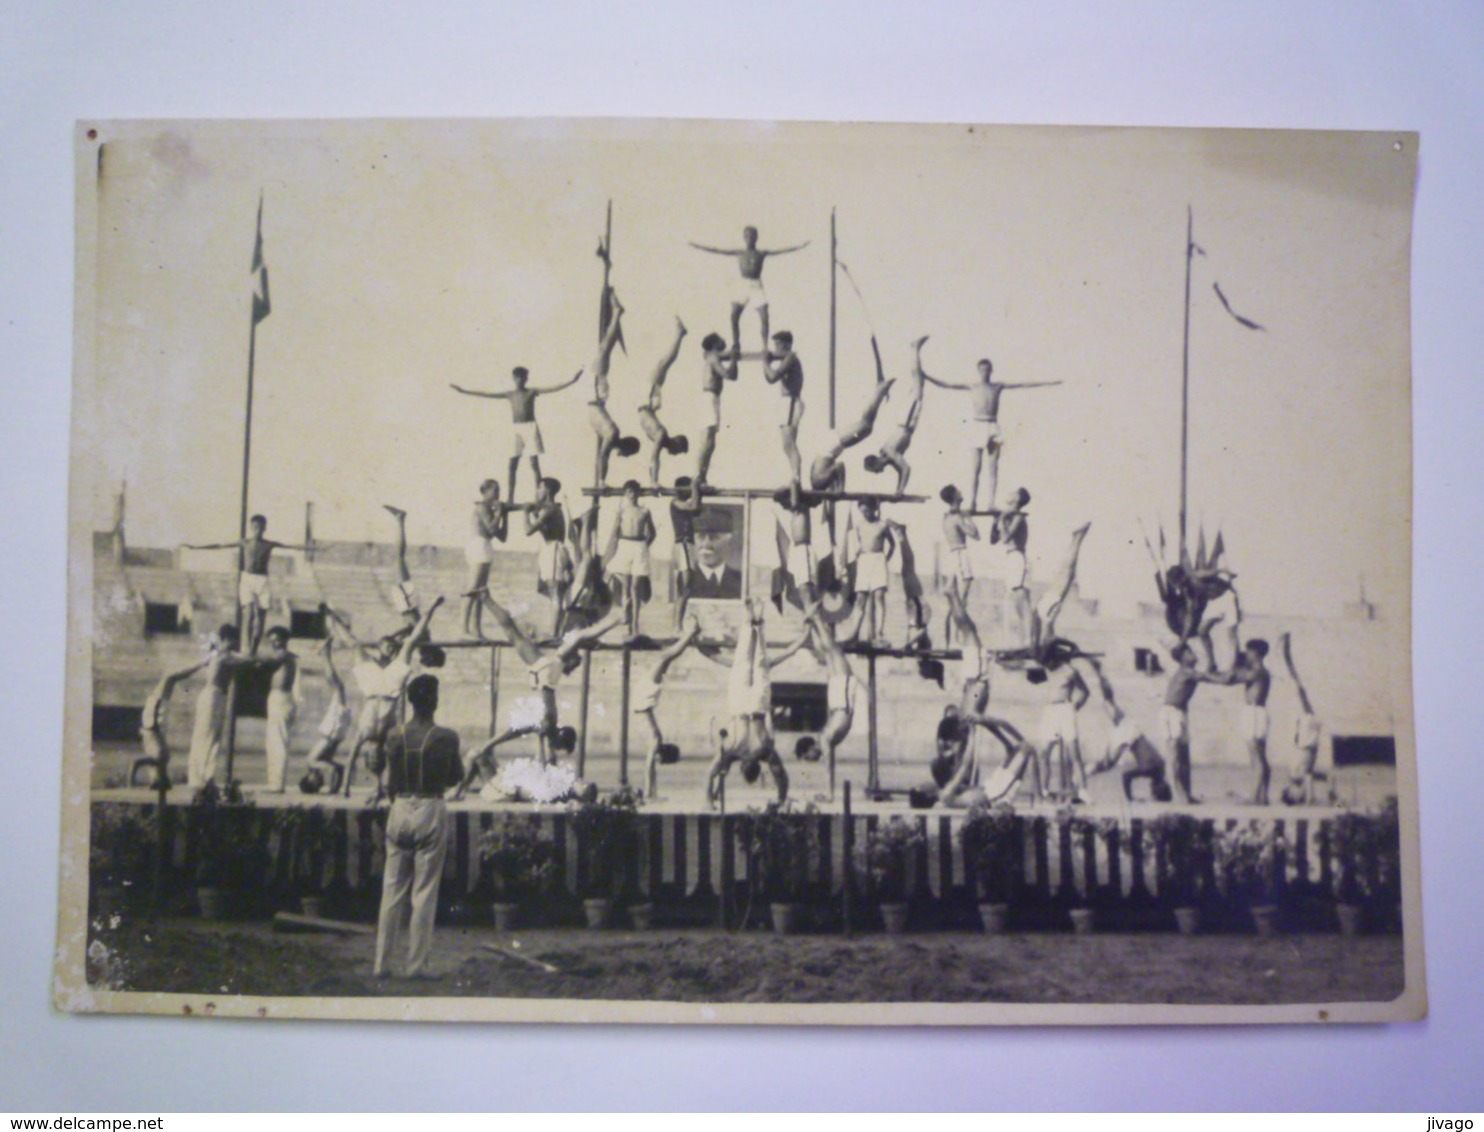 TOULOUSE  1942  : FÊTE GYMNIQUE  -  PYRAMIDES  Au Parc Municipal  (avec Portrait Du Maréchal)  X  Format 18 X 11,5cm - Gymnastique